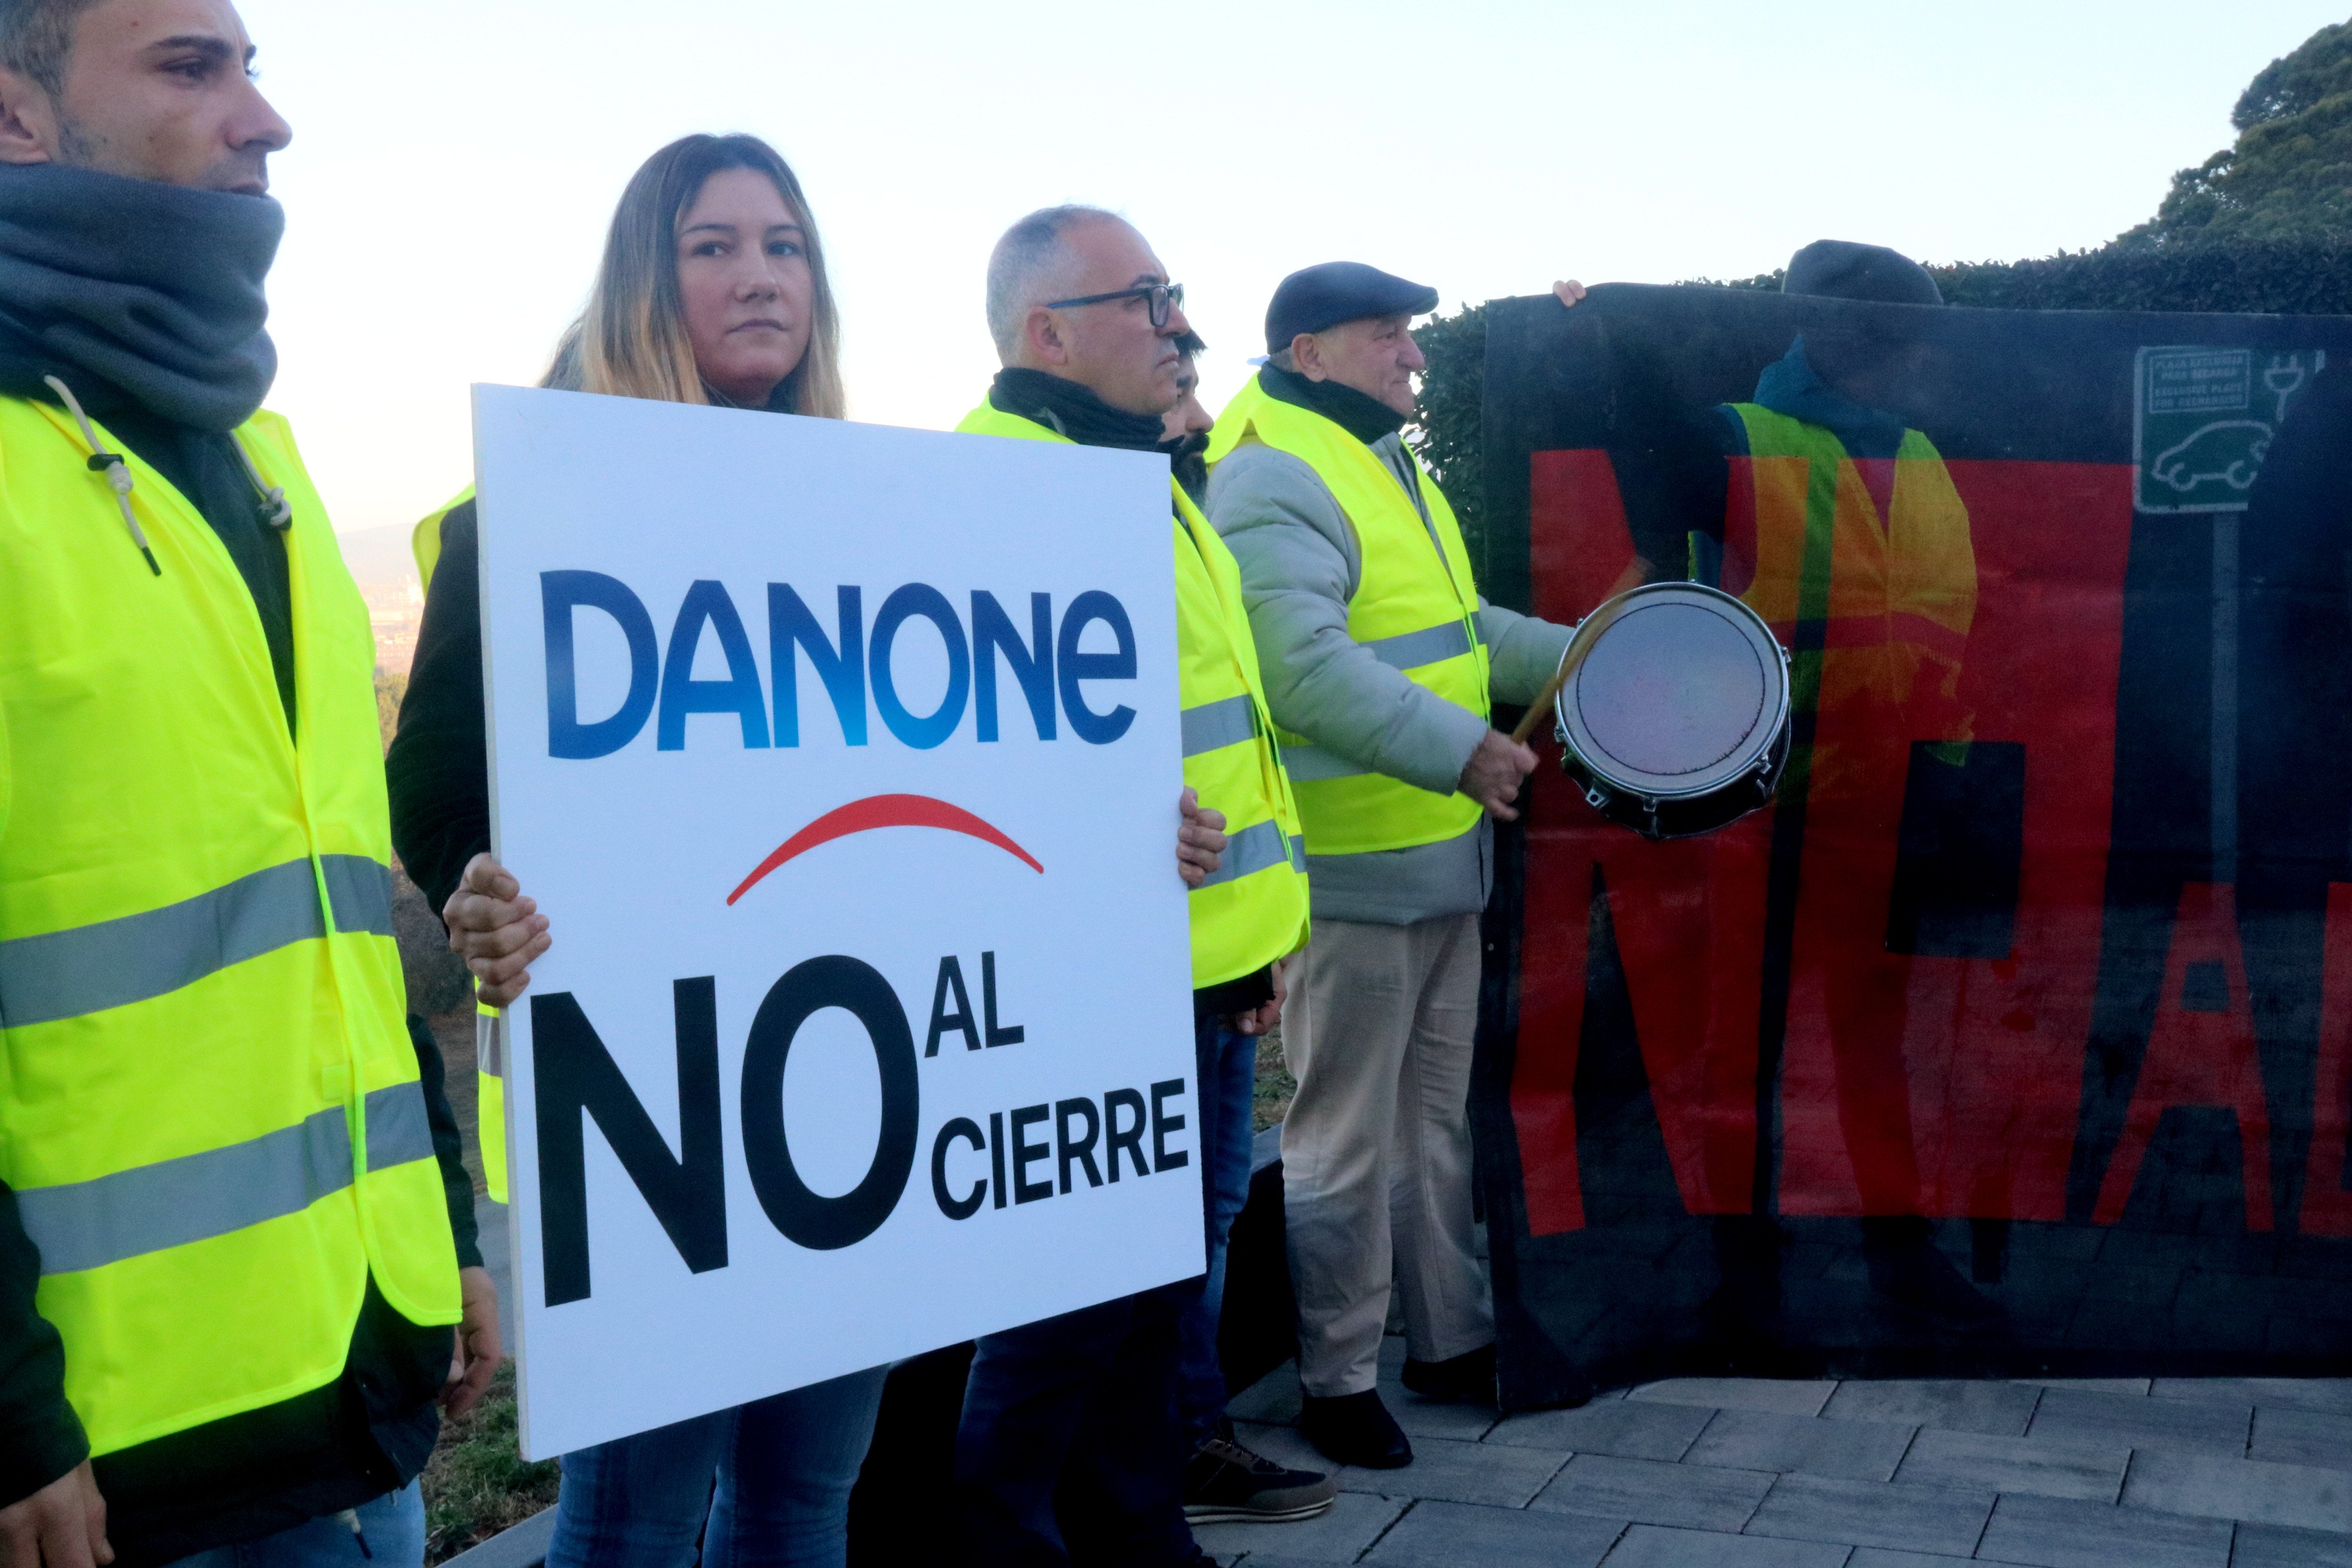 Danone tancarà a Parets a finals d'any i els treballadors proposaran trasllats a València